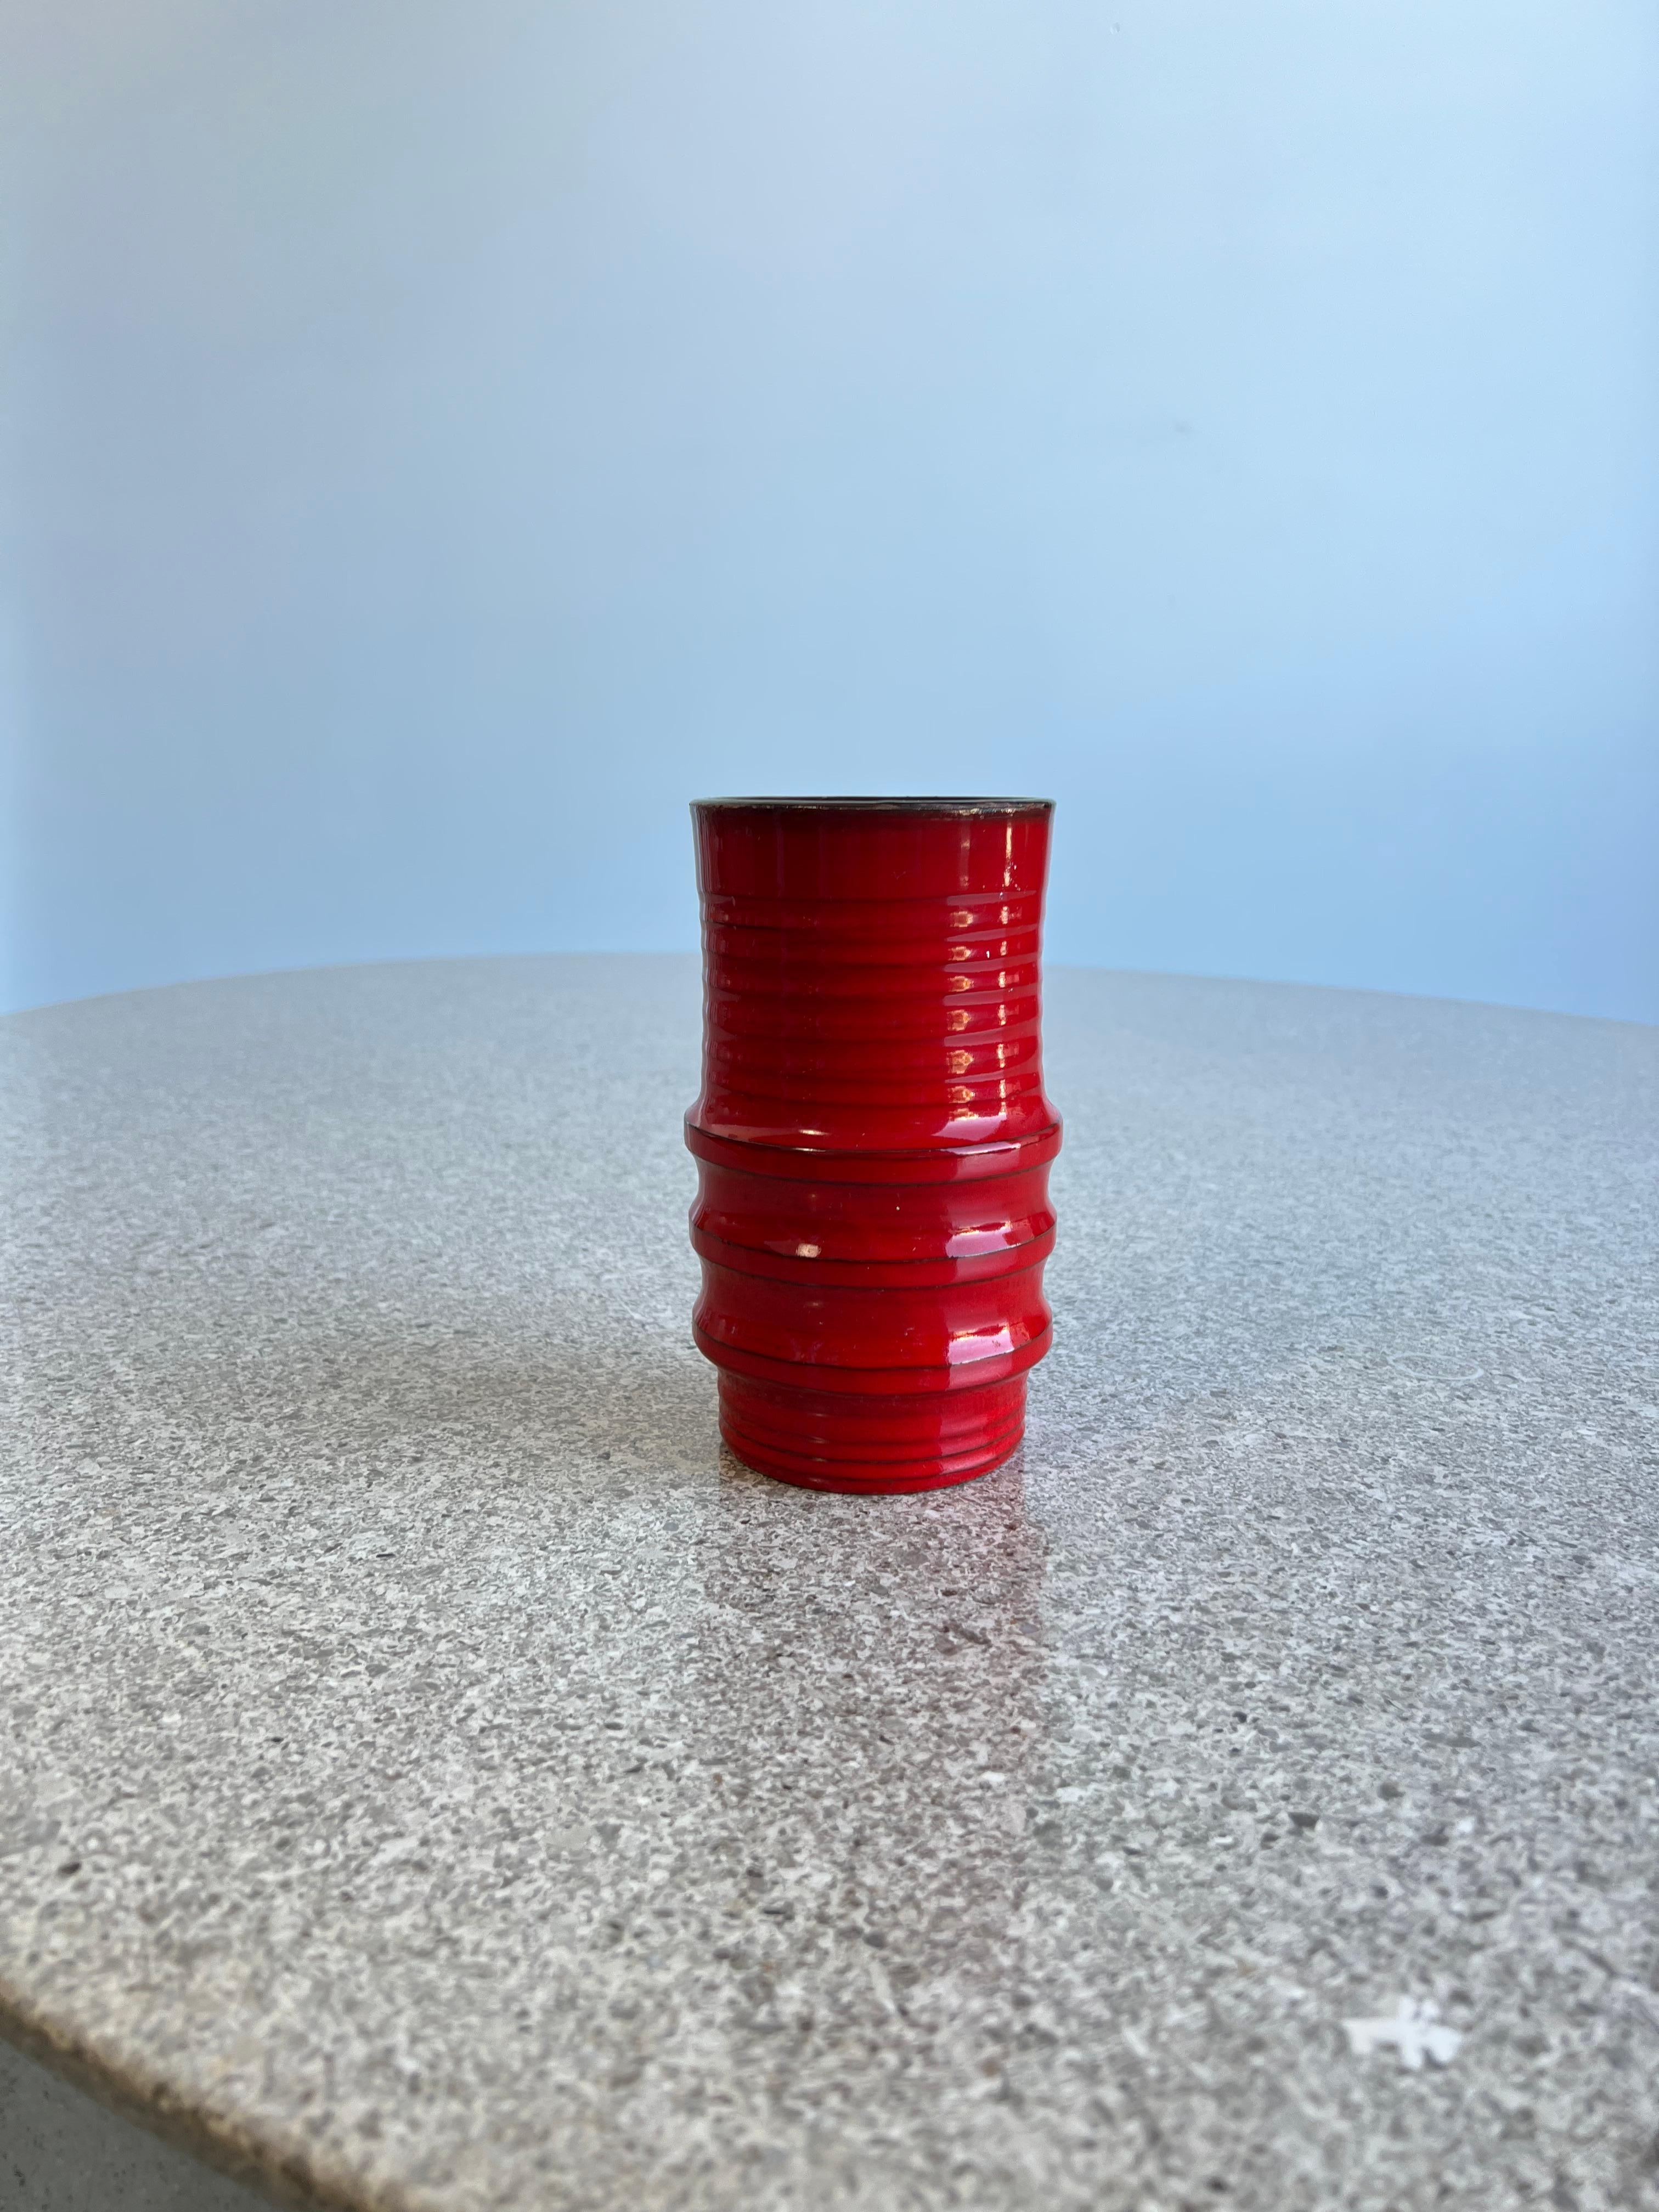 Italienische Vase aus roter Glasur von Bitossi aus der Jahrhundertmitte 1960.
Stempel auf dem Boden, hergestellt in Italien, original Keramik in der typischen roten Farbe von Bitossi. 

